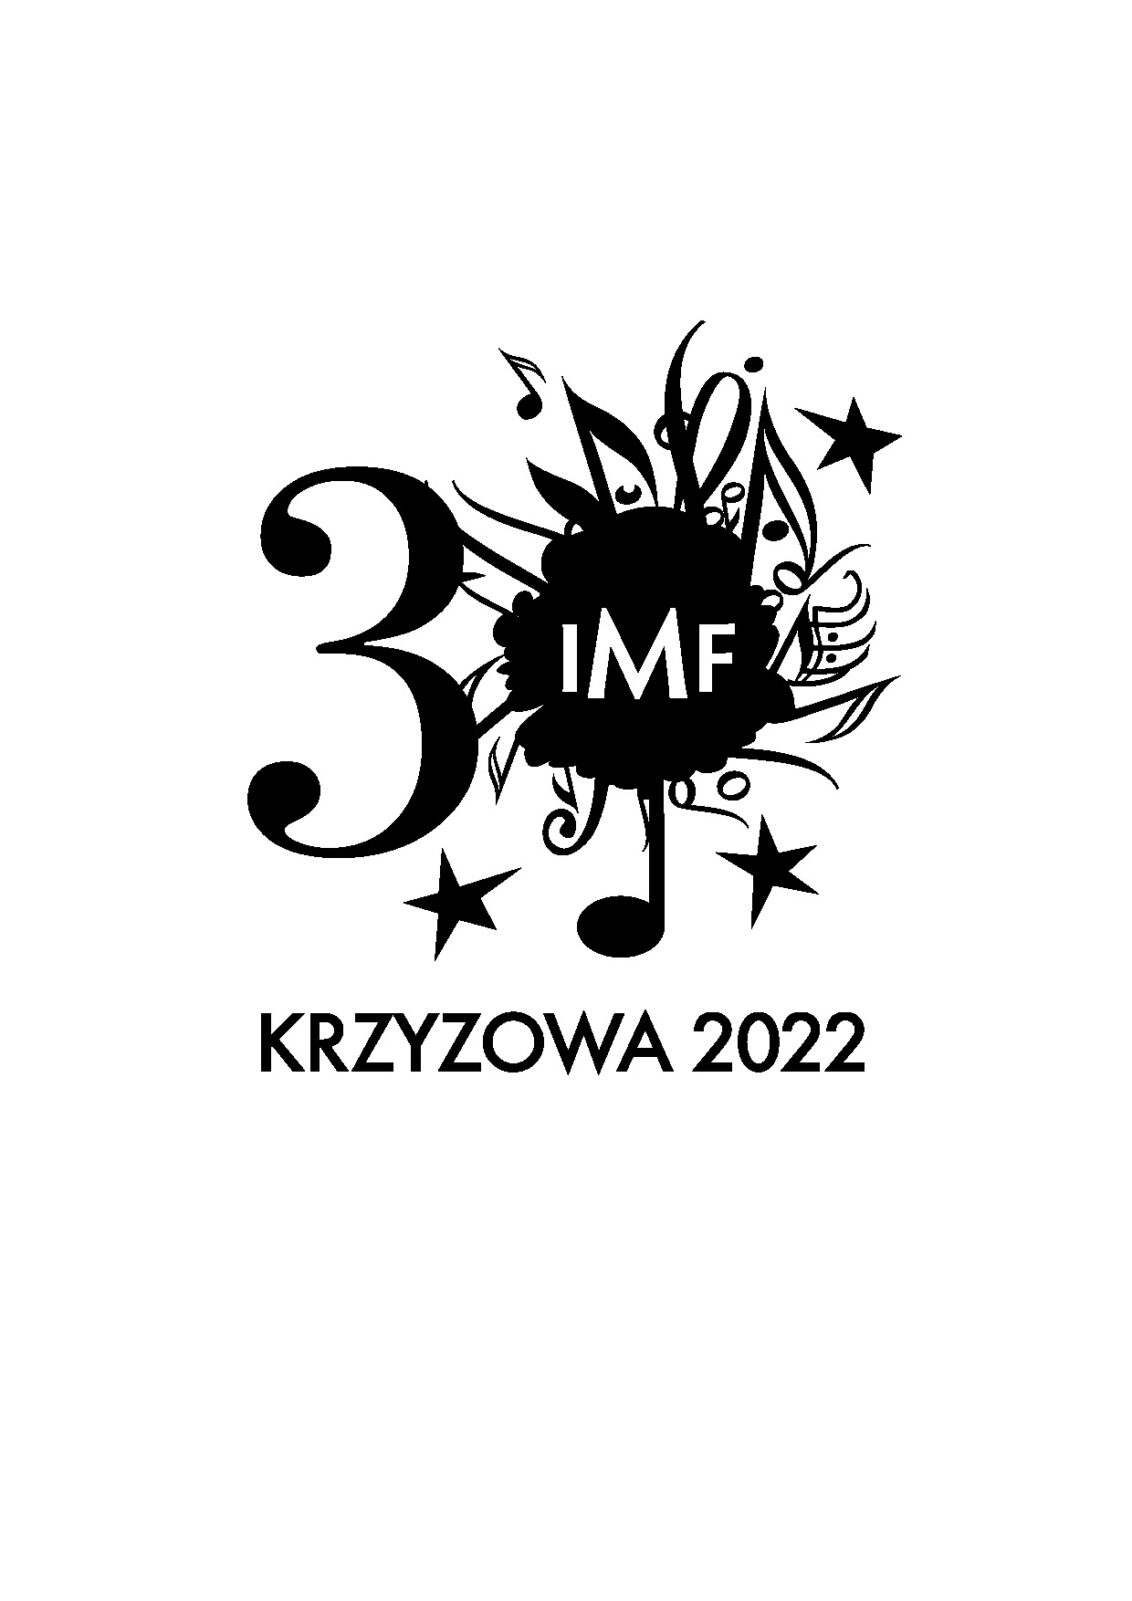 30 Jahre IMF Signet 7-2022